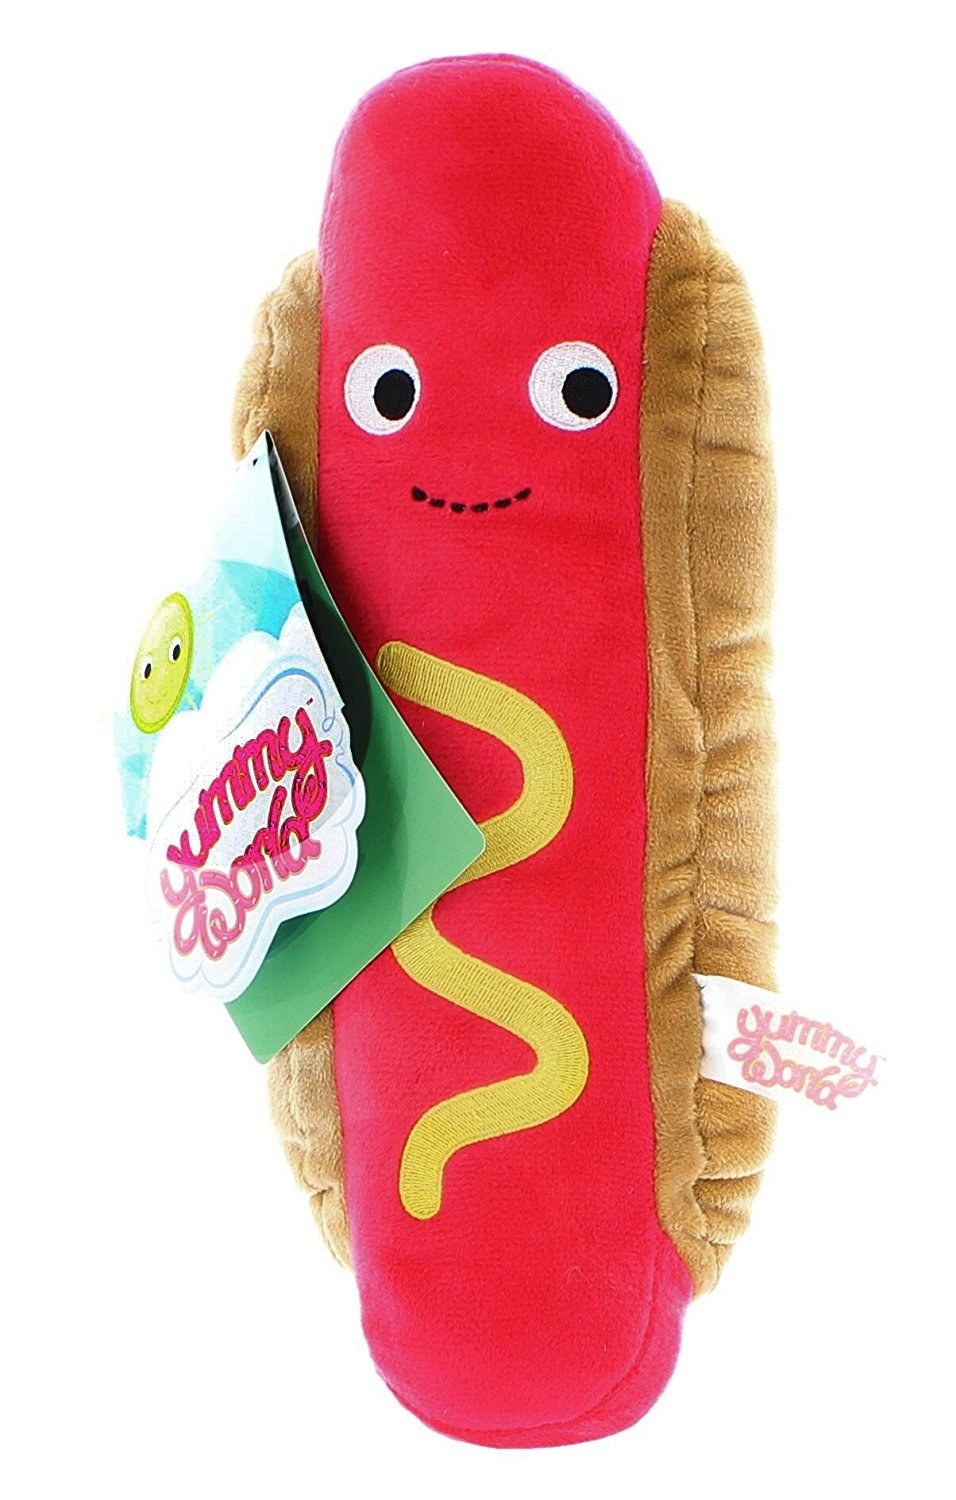 hot dog plushie